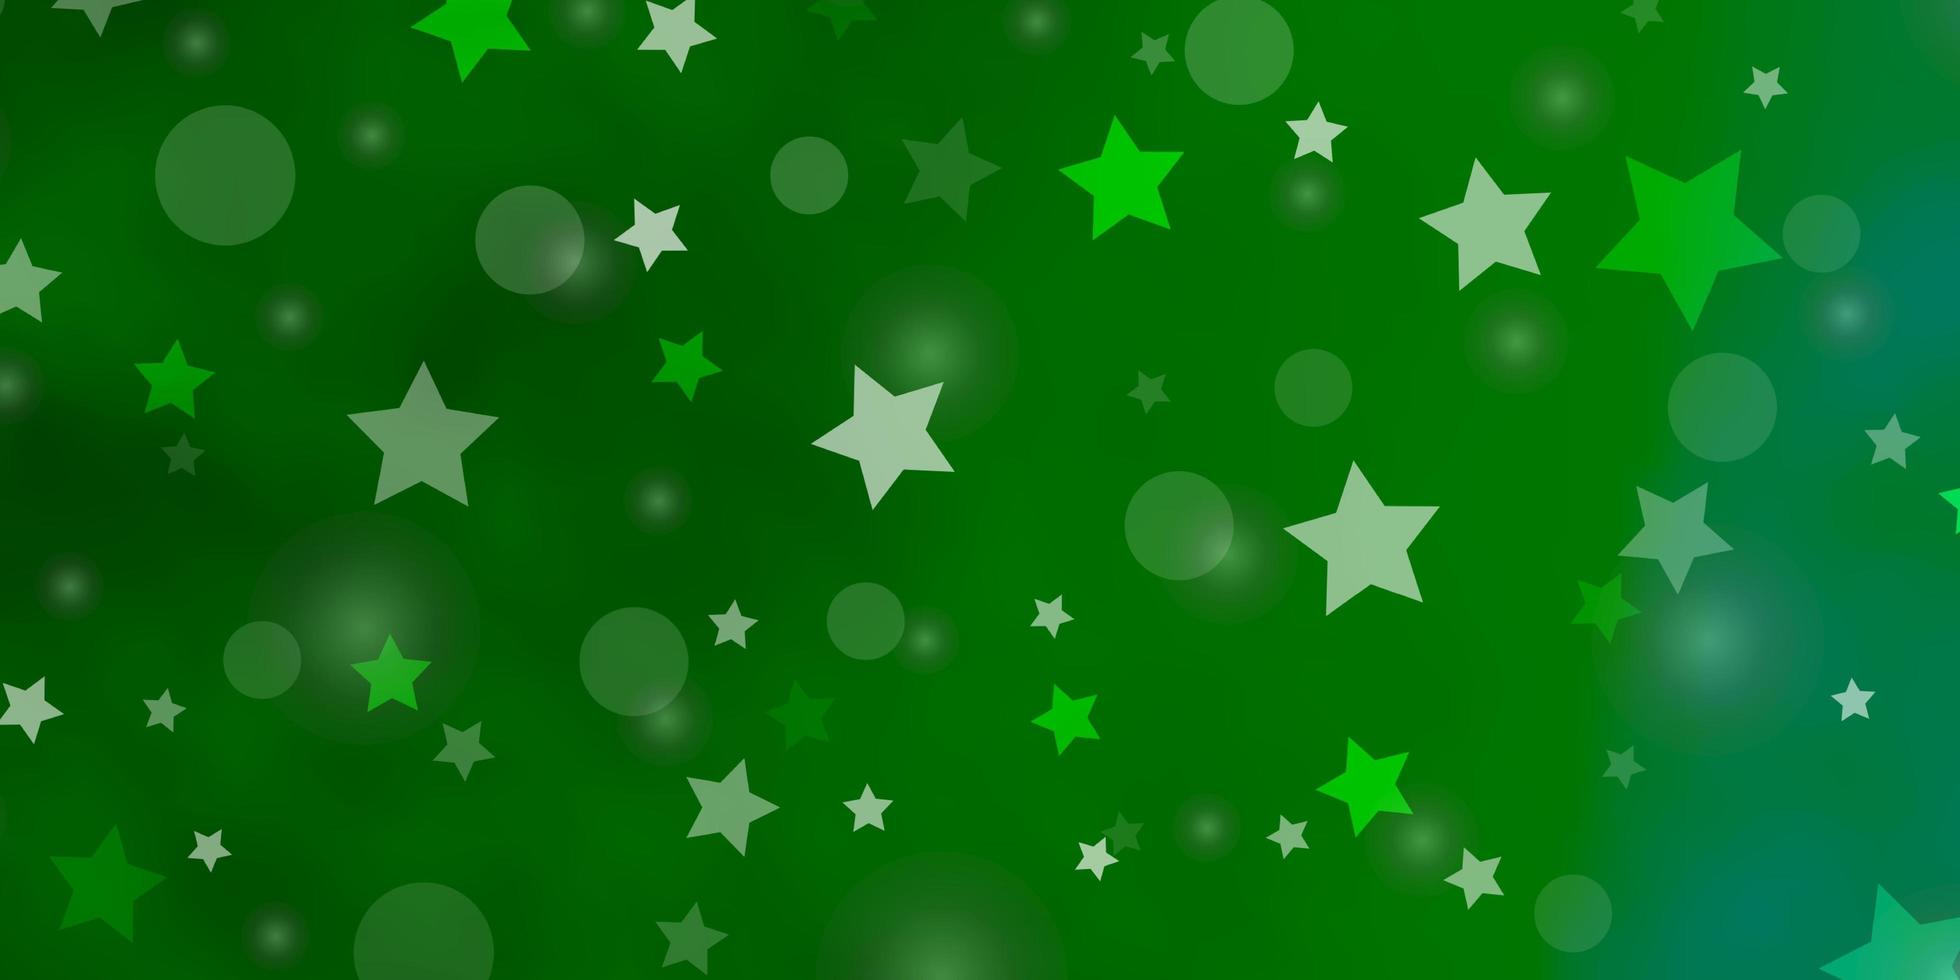 texture vettoriale verde chiaro con cerchi, stelle. illustrazione astratta con macchie colorate, stelle. modello per la progettazione di tessuto, sfondi.